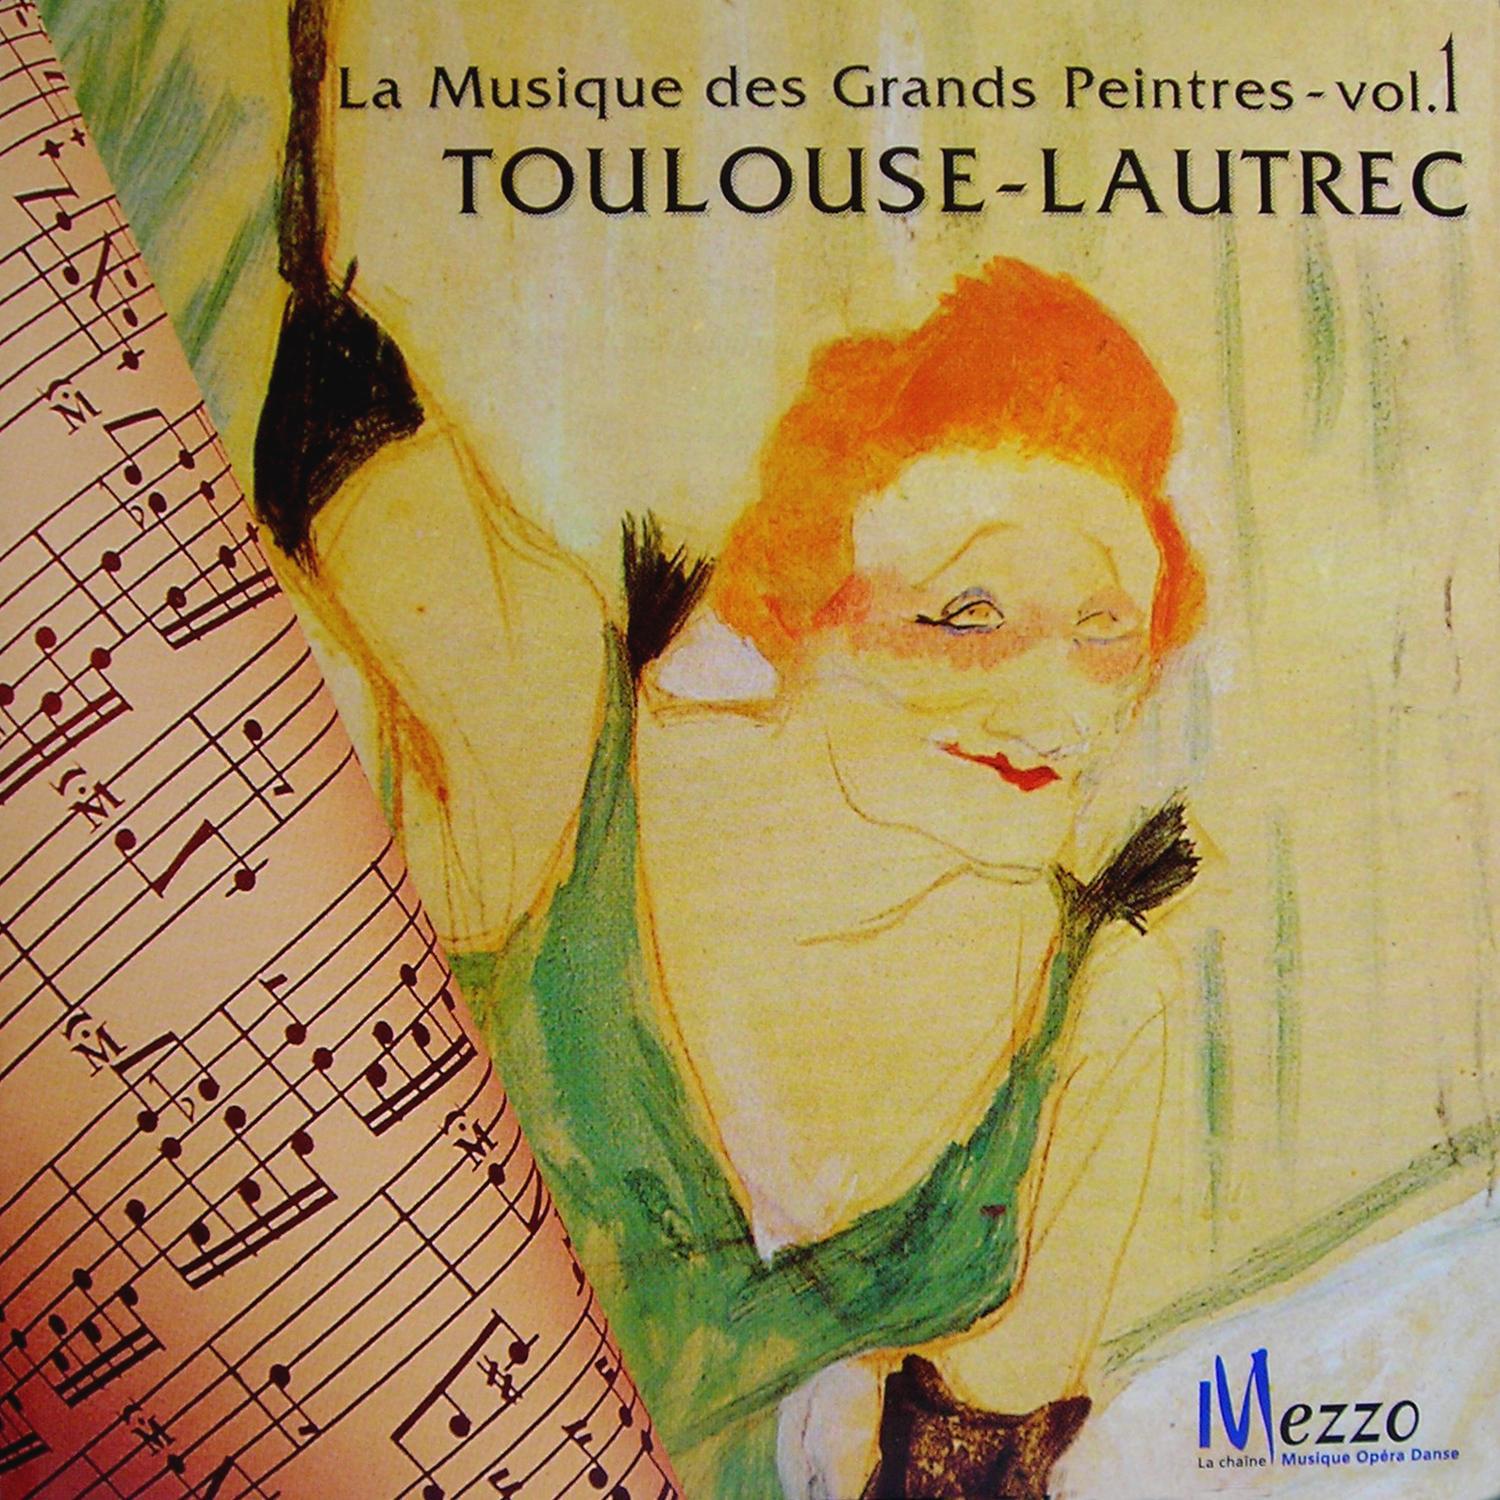 La Musique des Grands Peintres (Famous Painters' Music Collection): Toulouse-Lautrec, Vol. 1/16